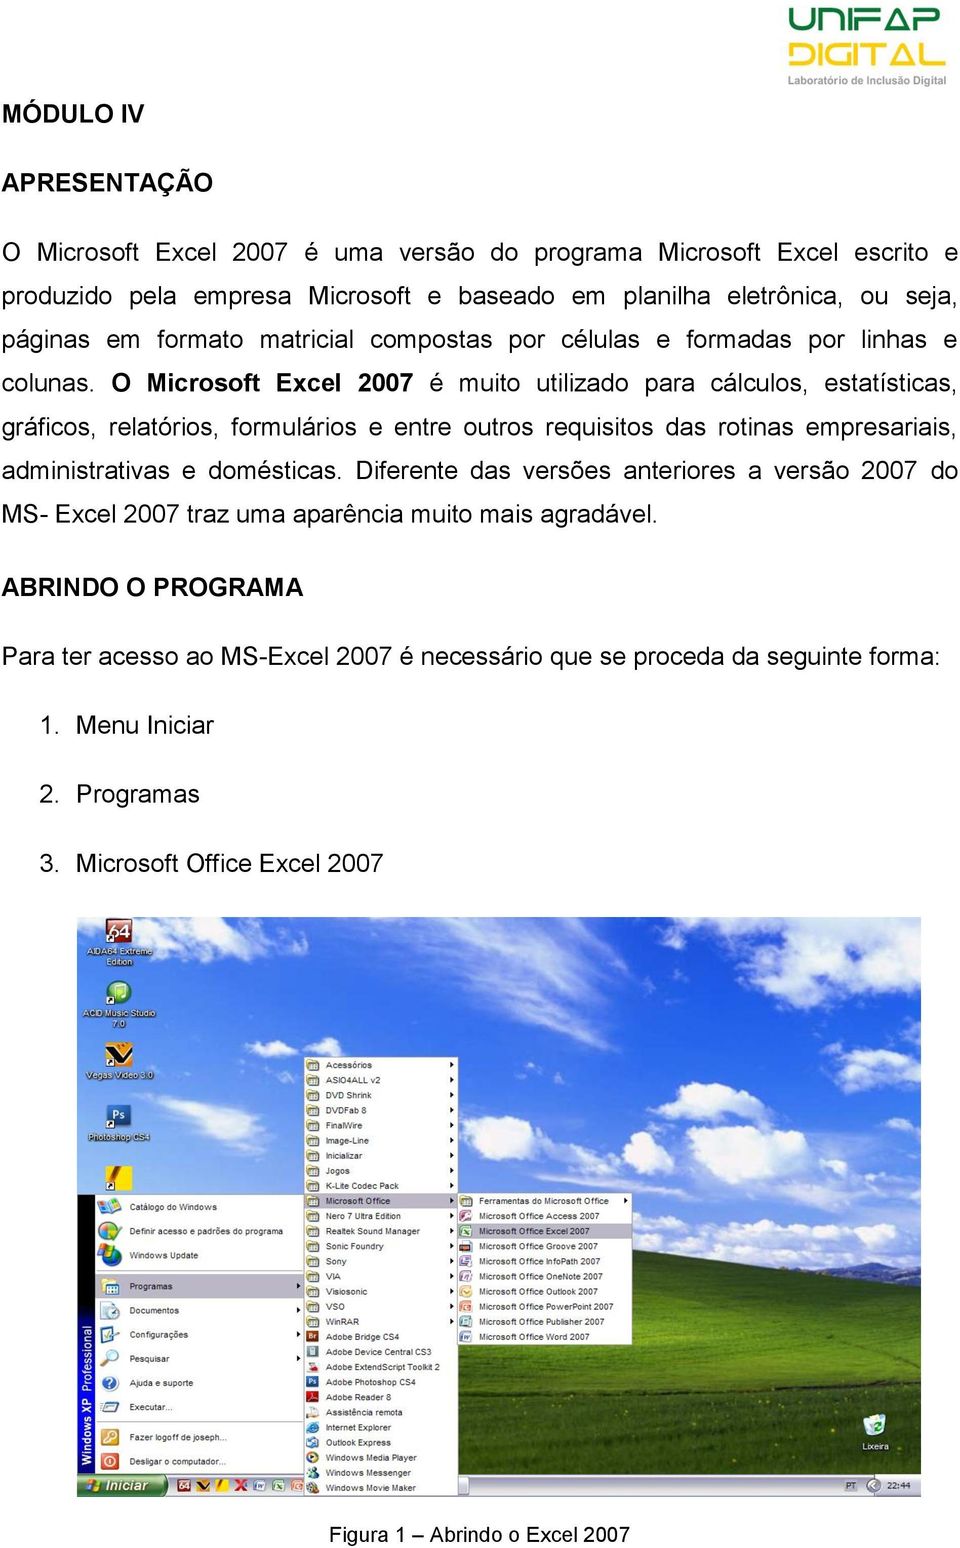 O Microsoft Excel 2007 é muito utilizado para cálculos, estatísticas, gráficos, relatórios, formulários e entre outros requisitos das rotinas empresariais, administrativas e domésticas.